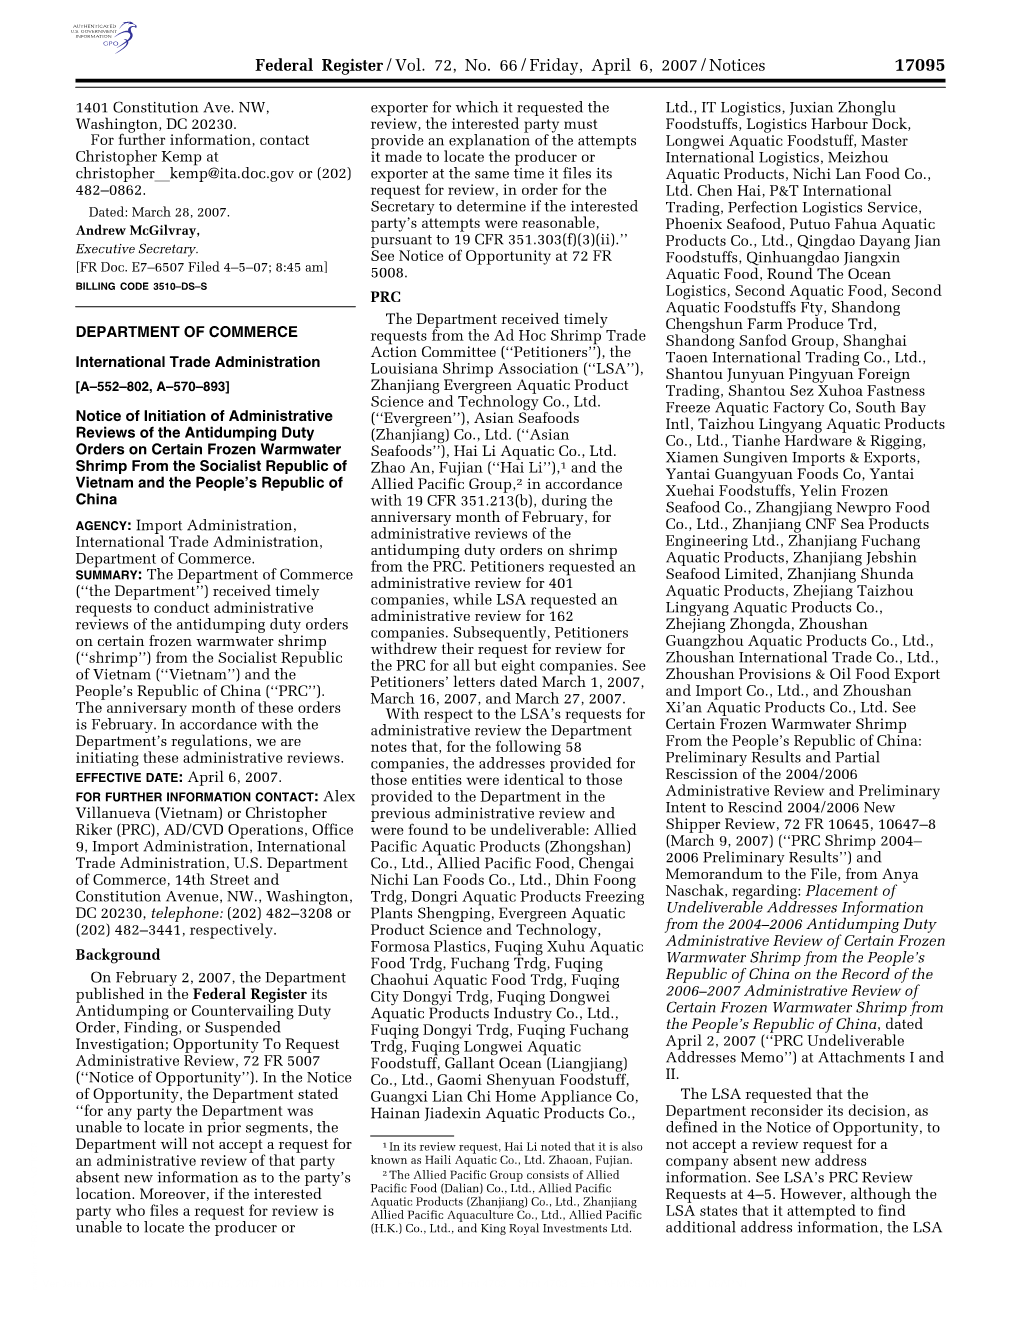 Federal Register/Vol. 72, No. 66/Friday, April 6, 2007/Notices